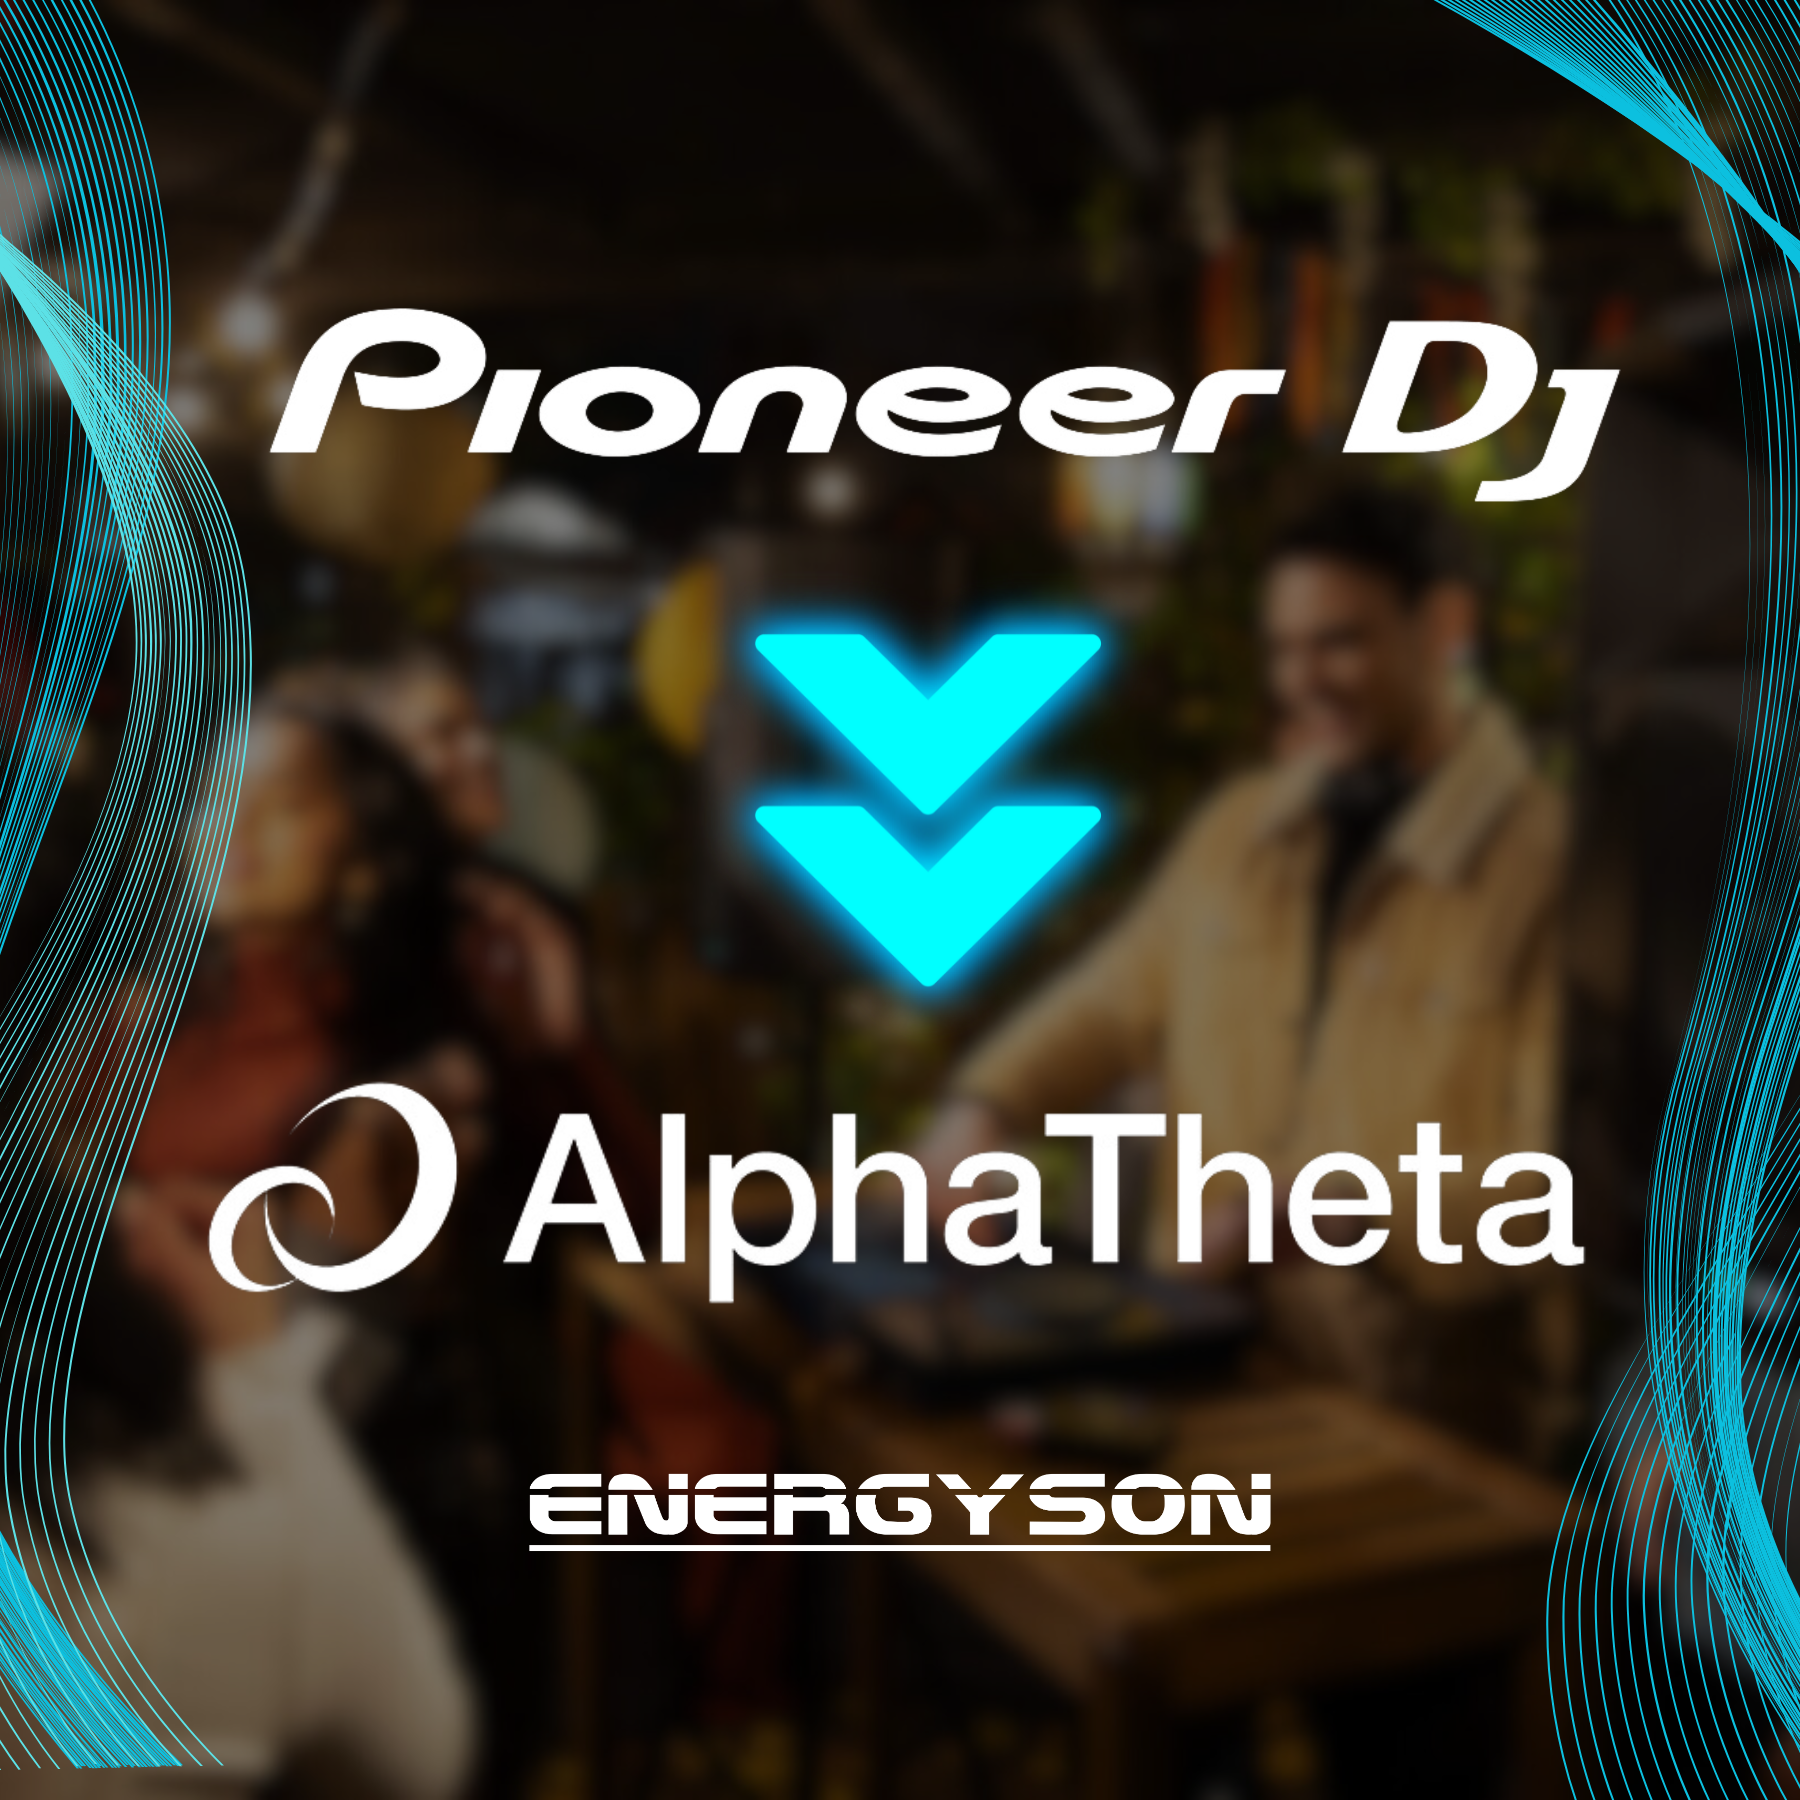 AlphaTheta, l’évolution de Pioneer DJ : Découvrez le renouveau de l’univers deejay